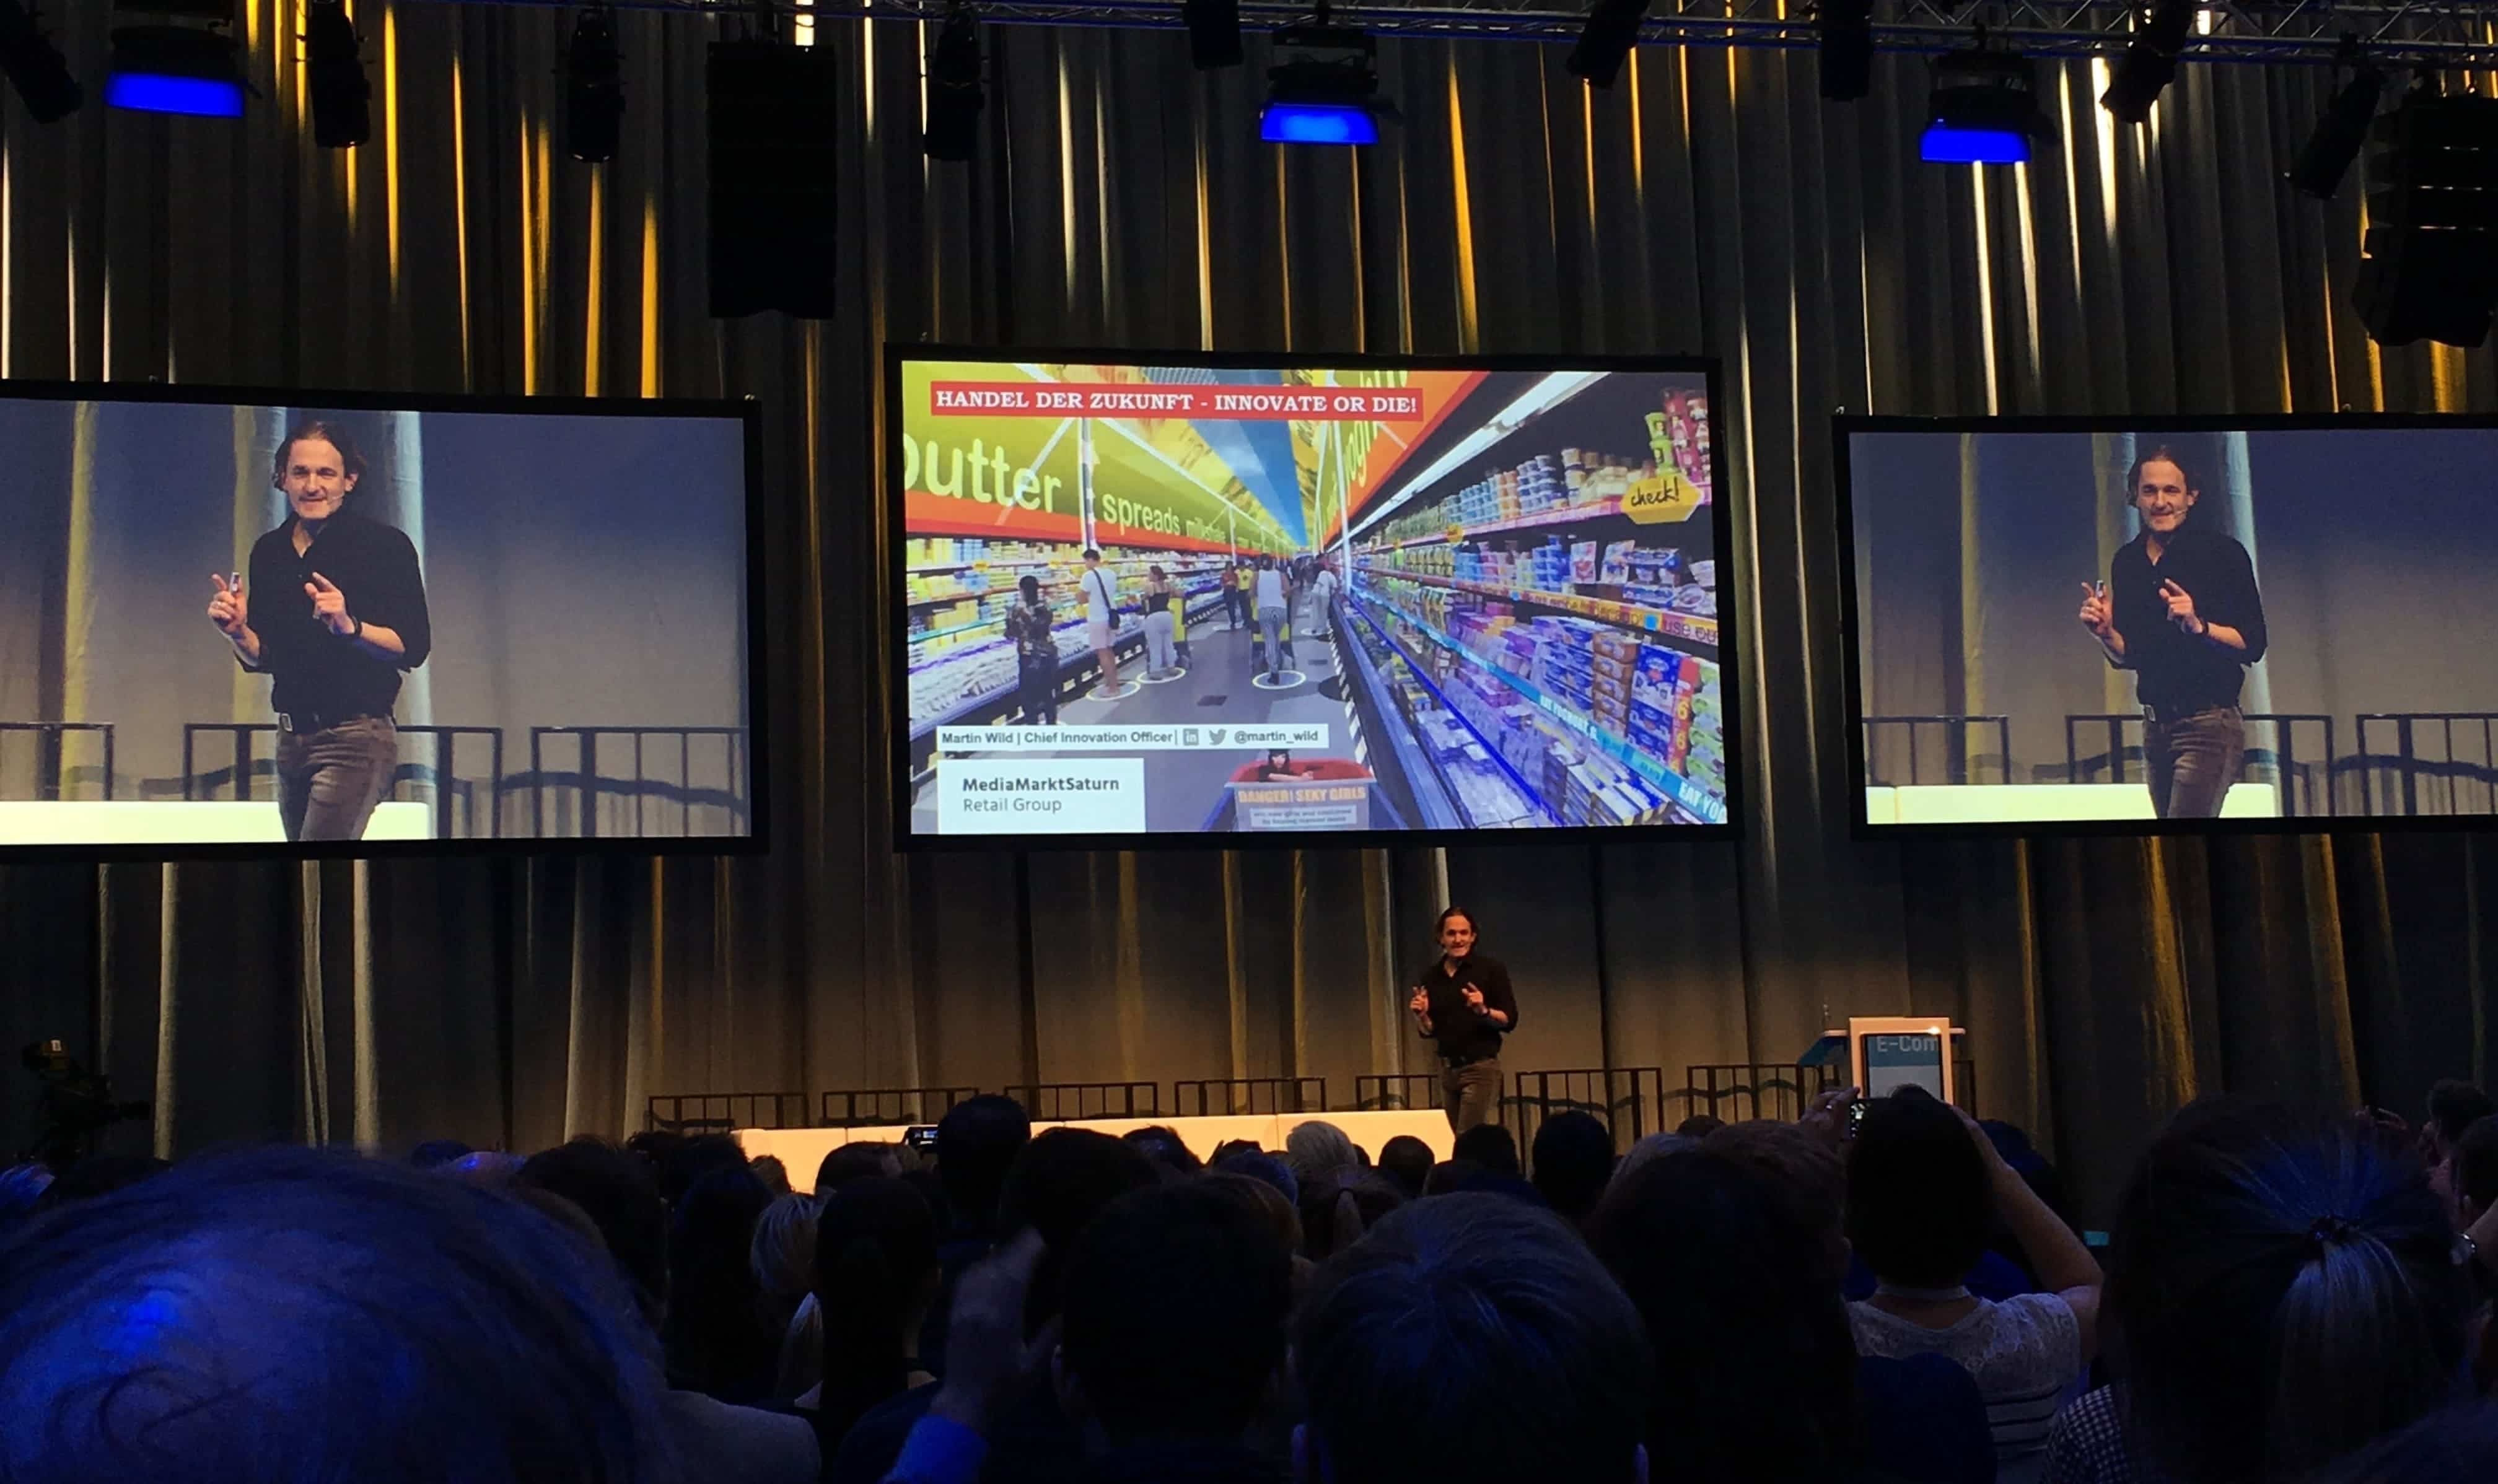 Martin Wilds Präsentation auf der Internet World Expo 2018 von der MediaMarktSaturn Retail Group zu "Innovate or Die!"